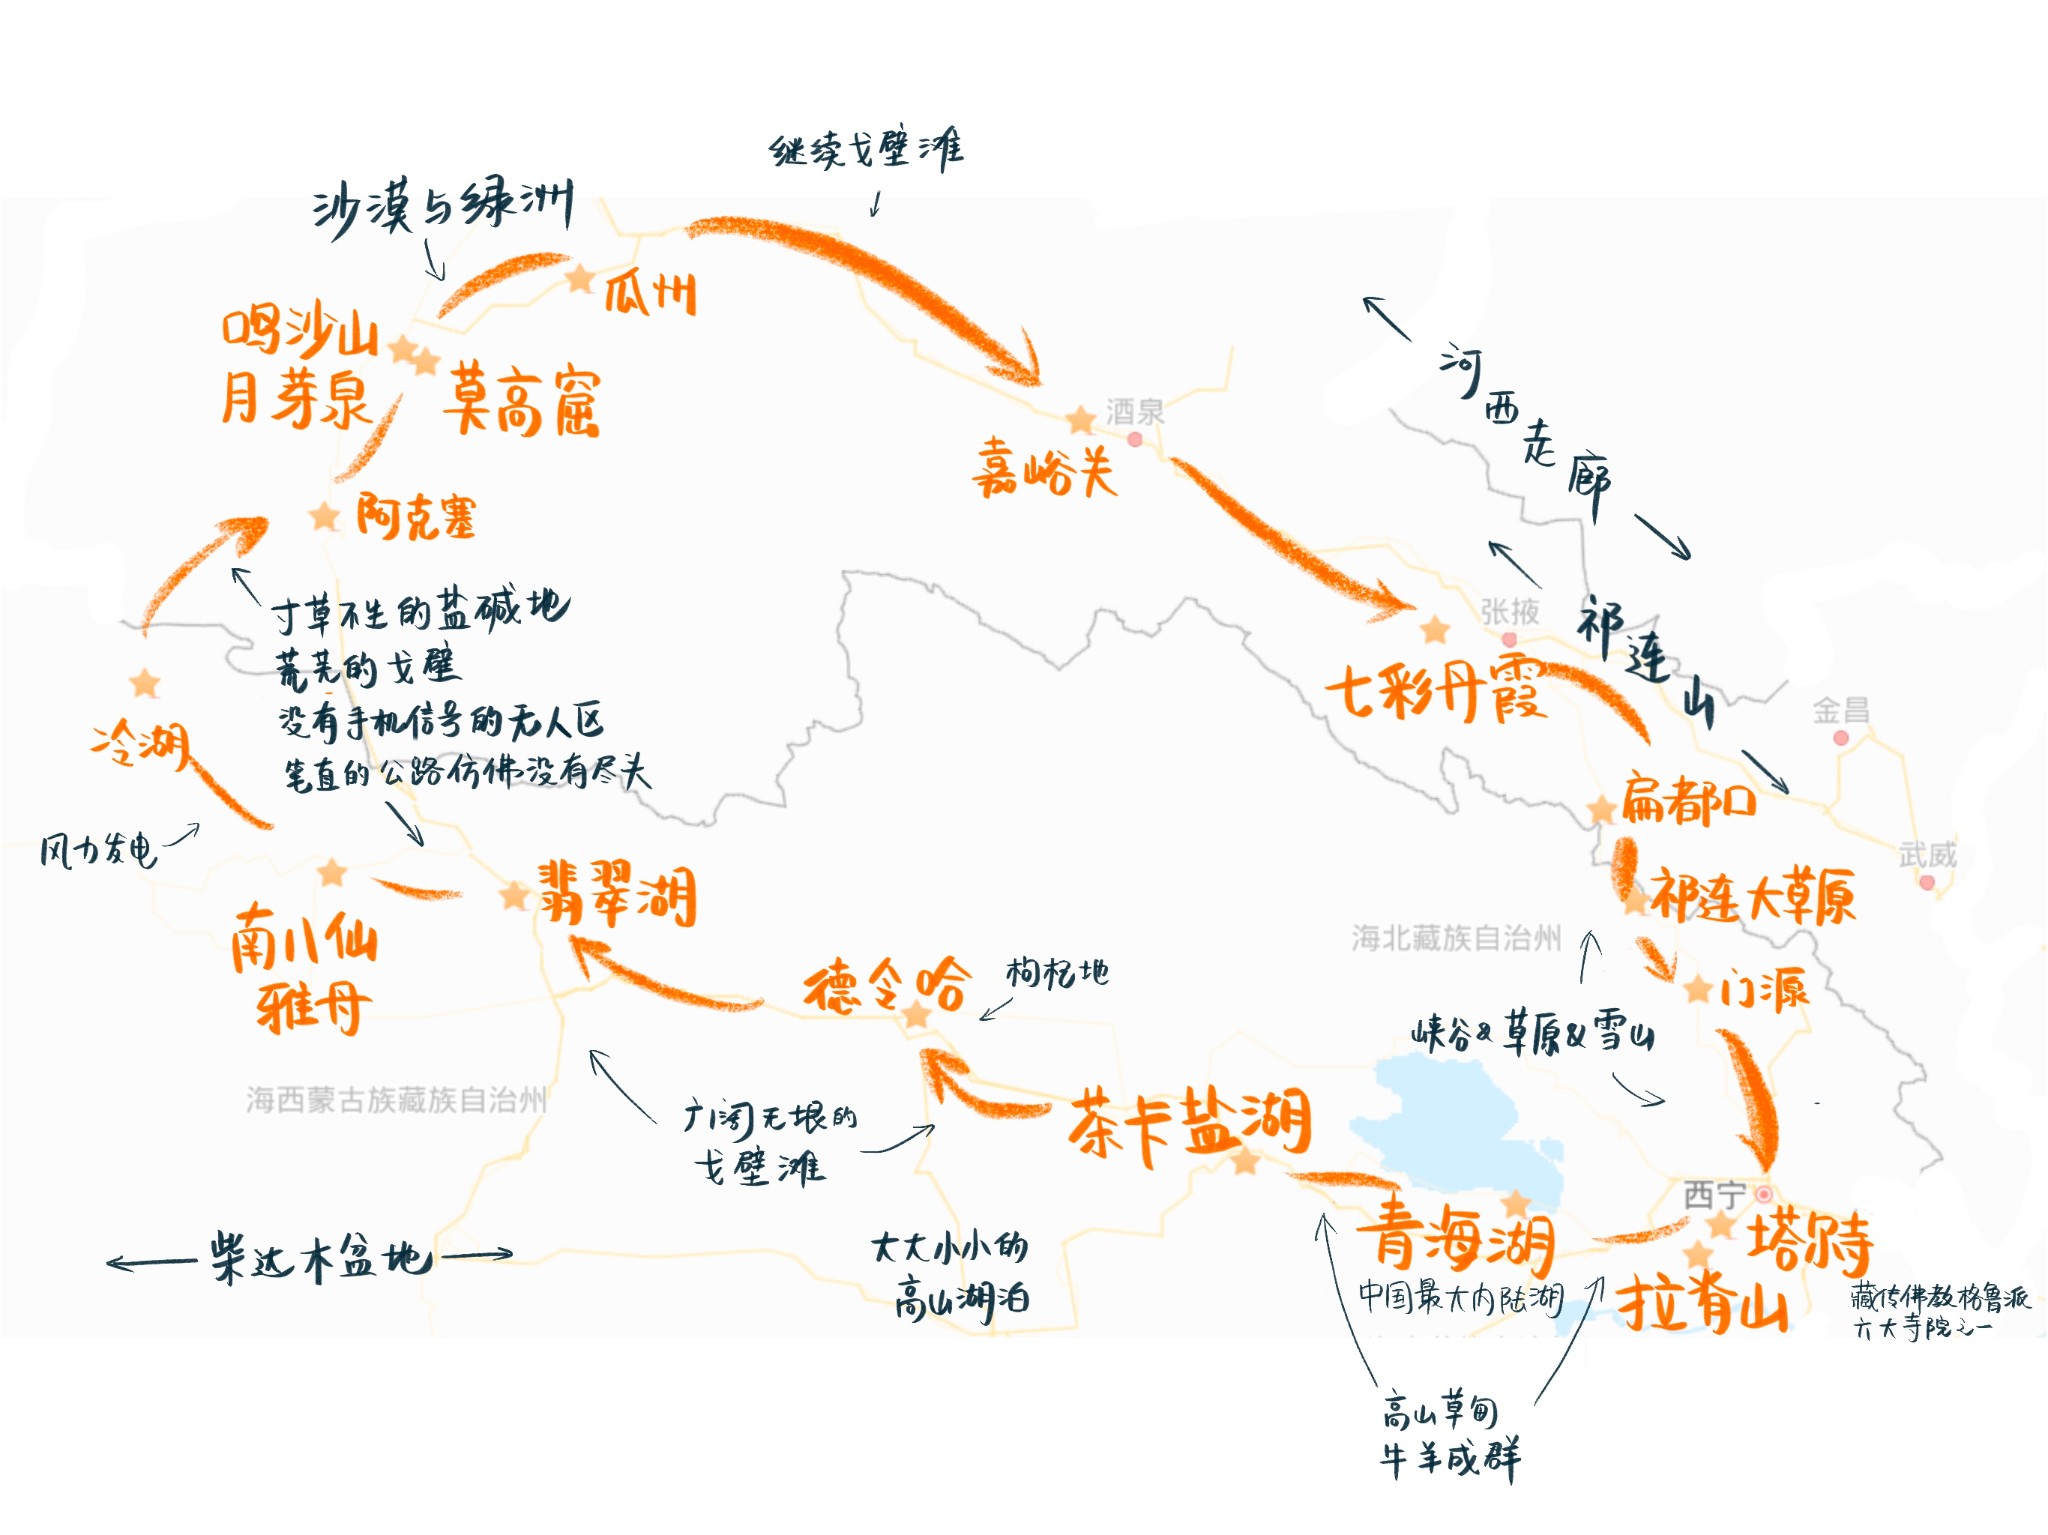 关于青甘大环线旅游结束语的信息